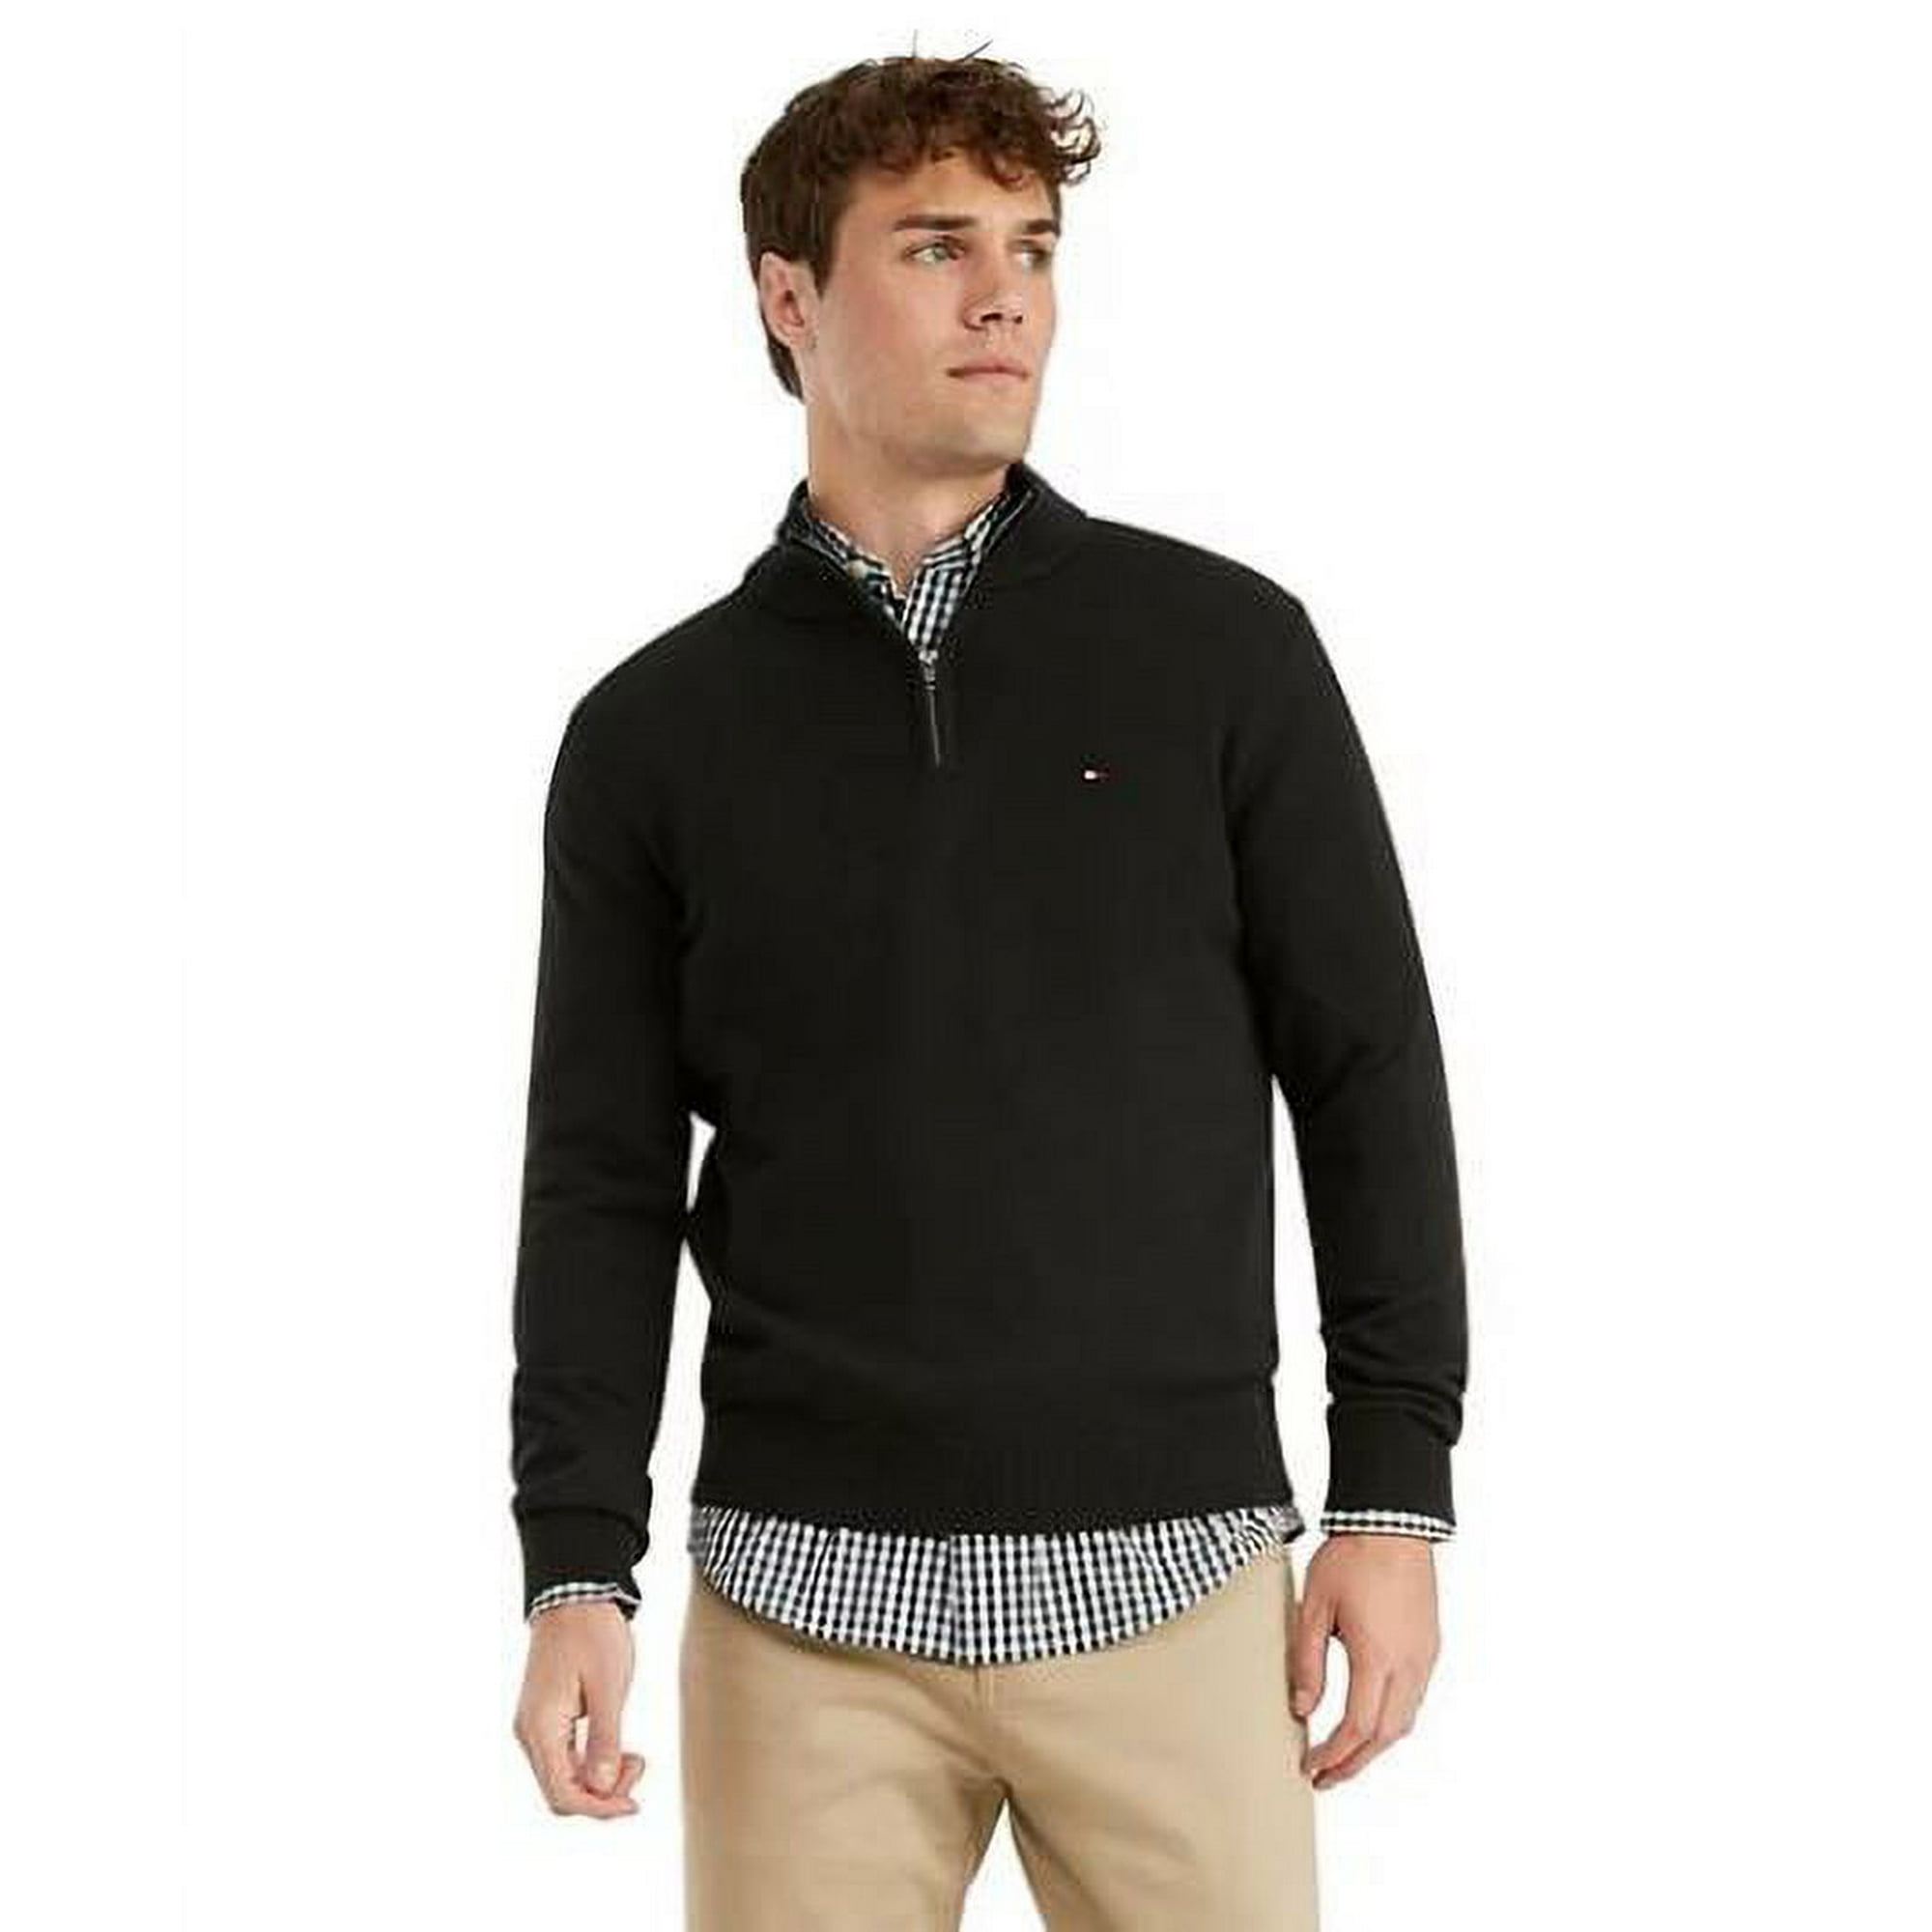 Hilfiger Men's Signature Quarter-Zip Sweater, Black - Walmart.com